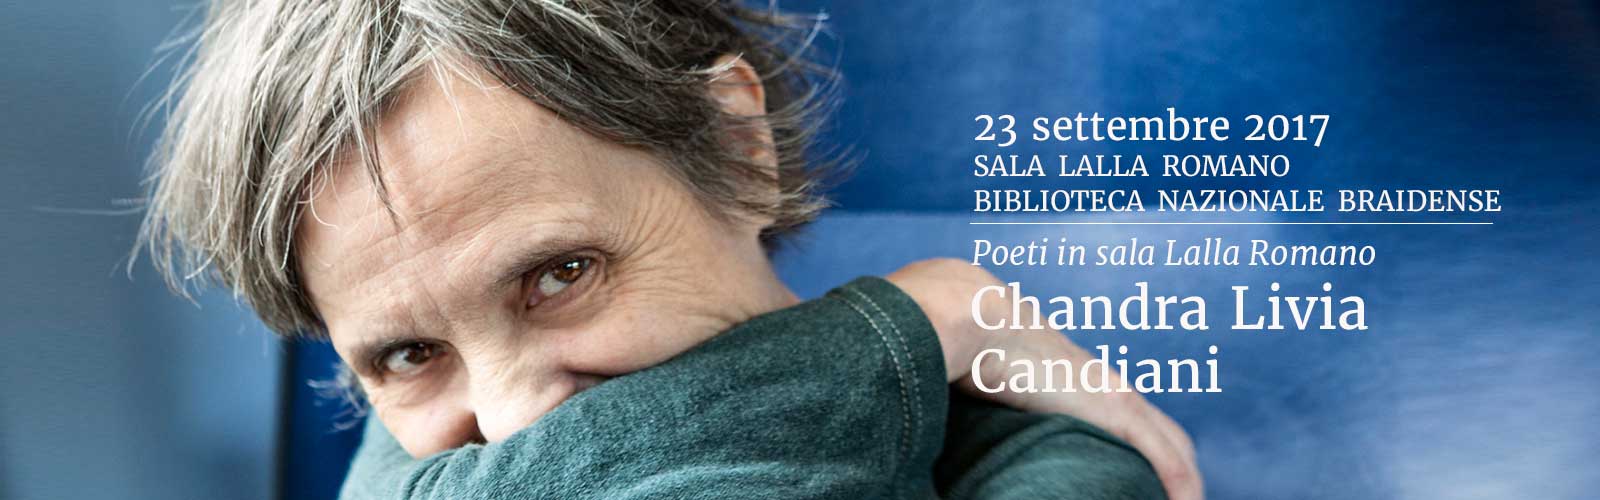 candiani-livia-chandra - Biografia - Casa della poesia